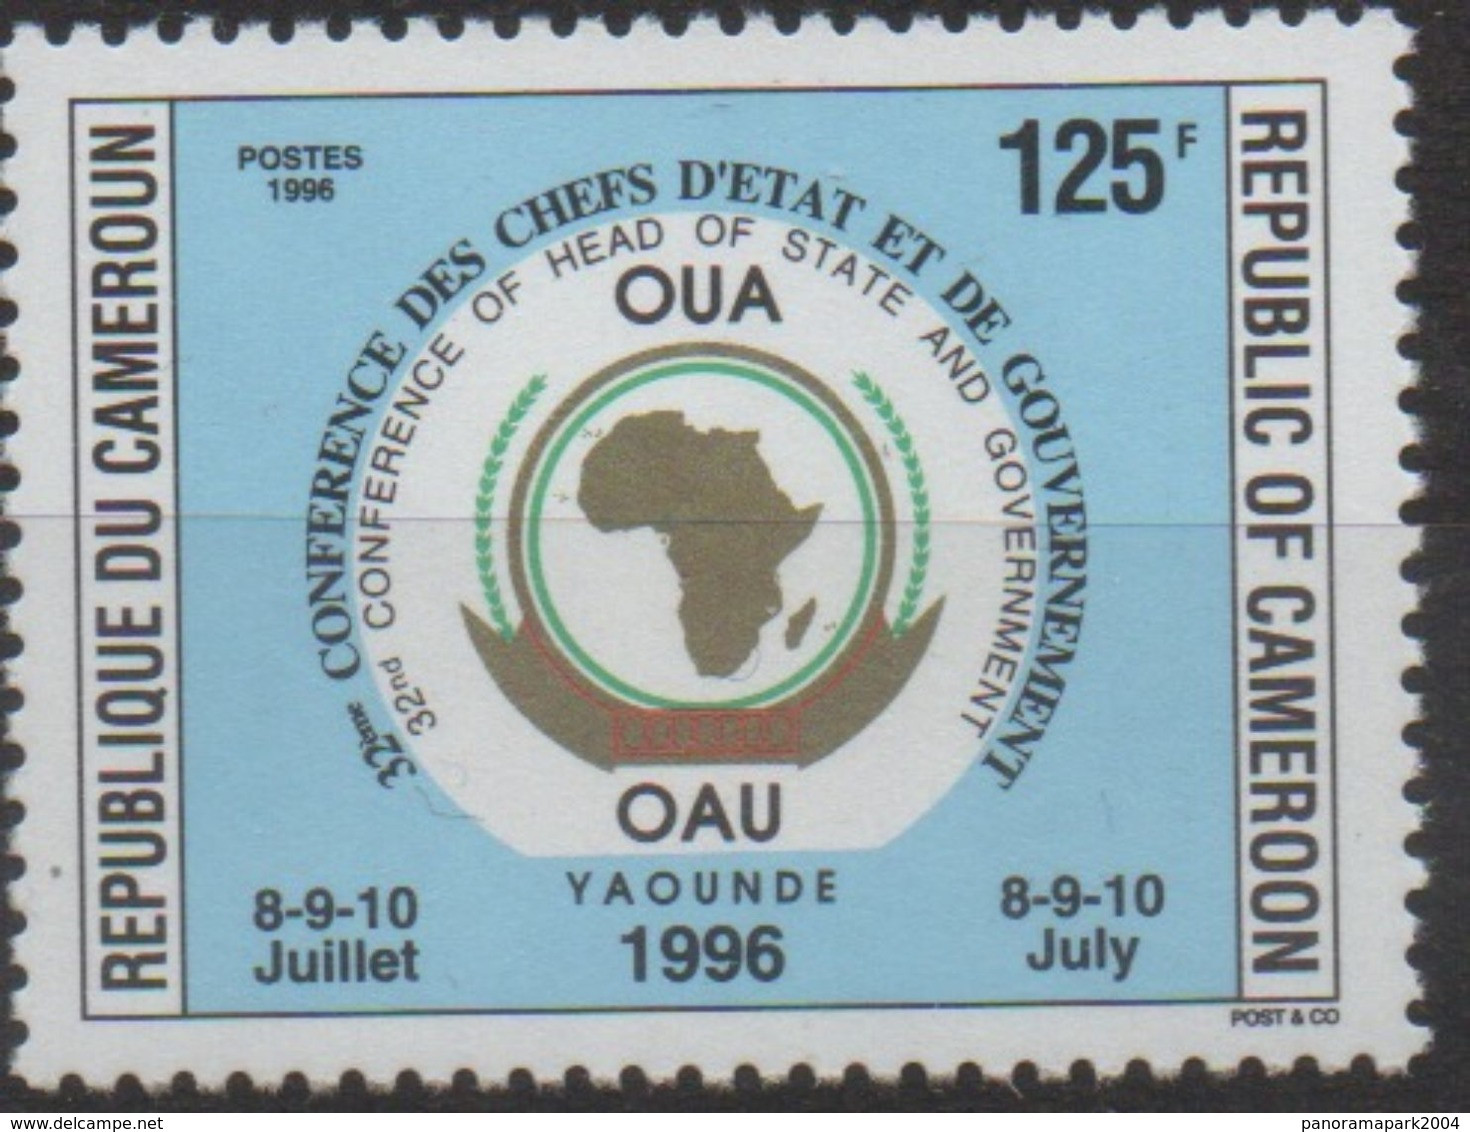 Cameroun Cameroon Kamerun 1996 125F Mi. 1221 OAU OUA Map Landkarte Carte Conférence Chefs D'Etat 8-9-10 Juillet - Kamerun (1960-...)